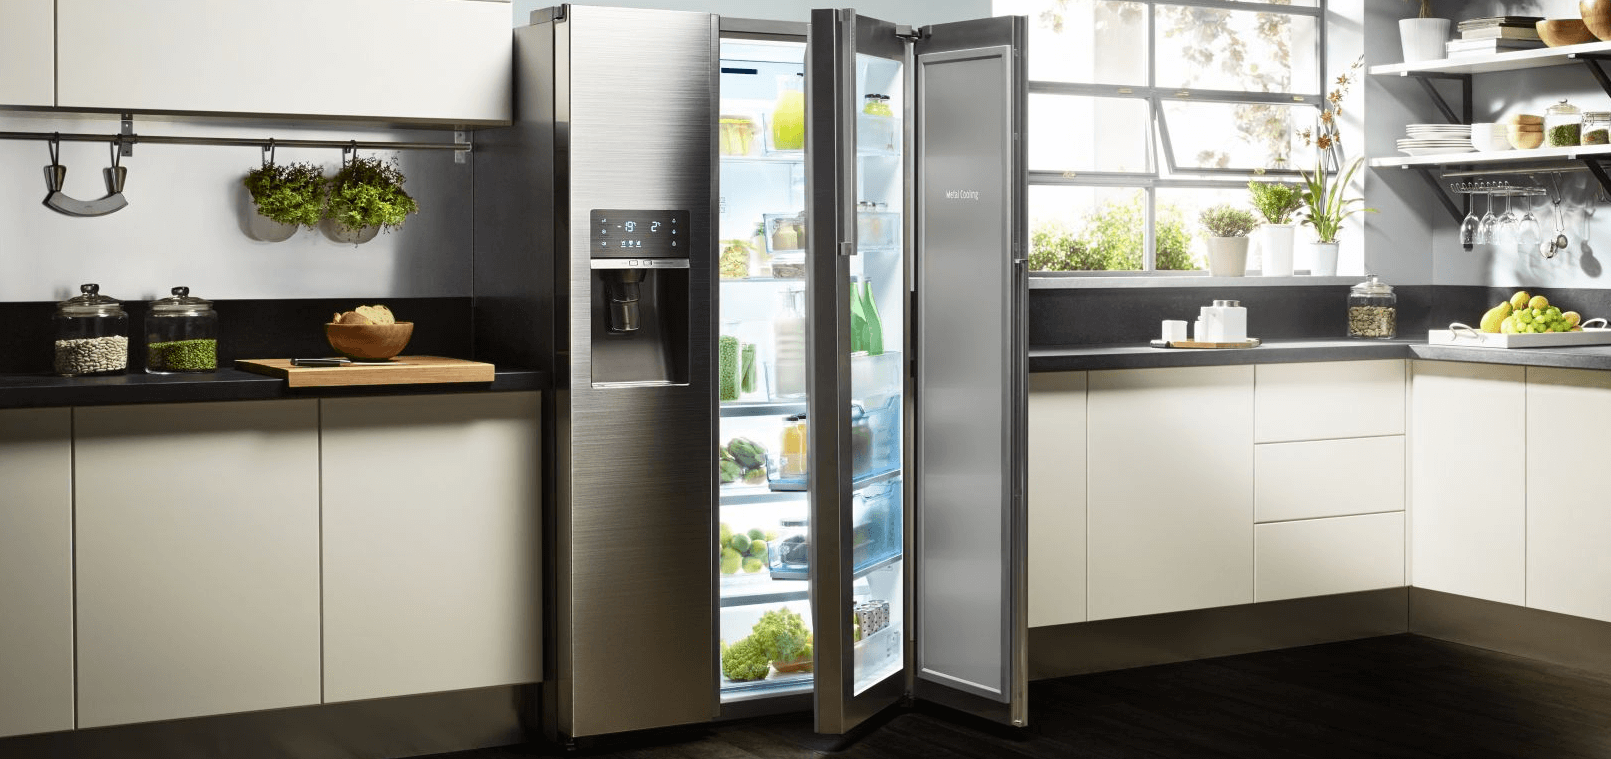 Купить холодильник в алматы. Холодильник. Кухня с белым холодильником. Kitchen Refrigerator.